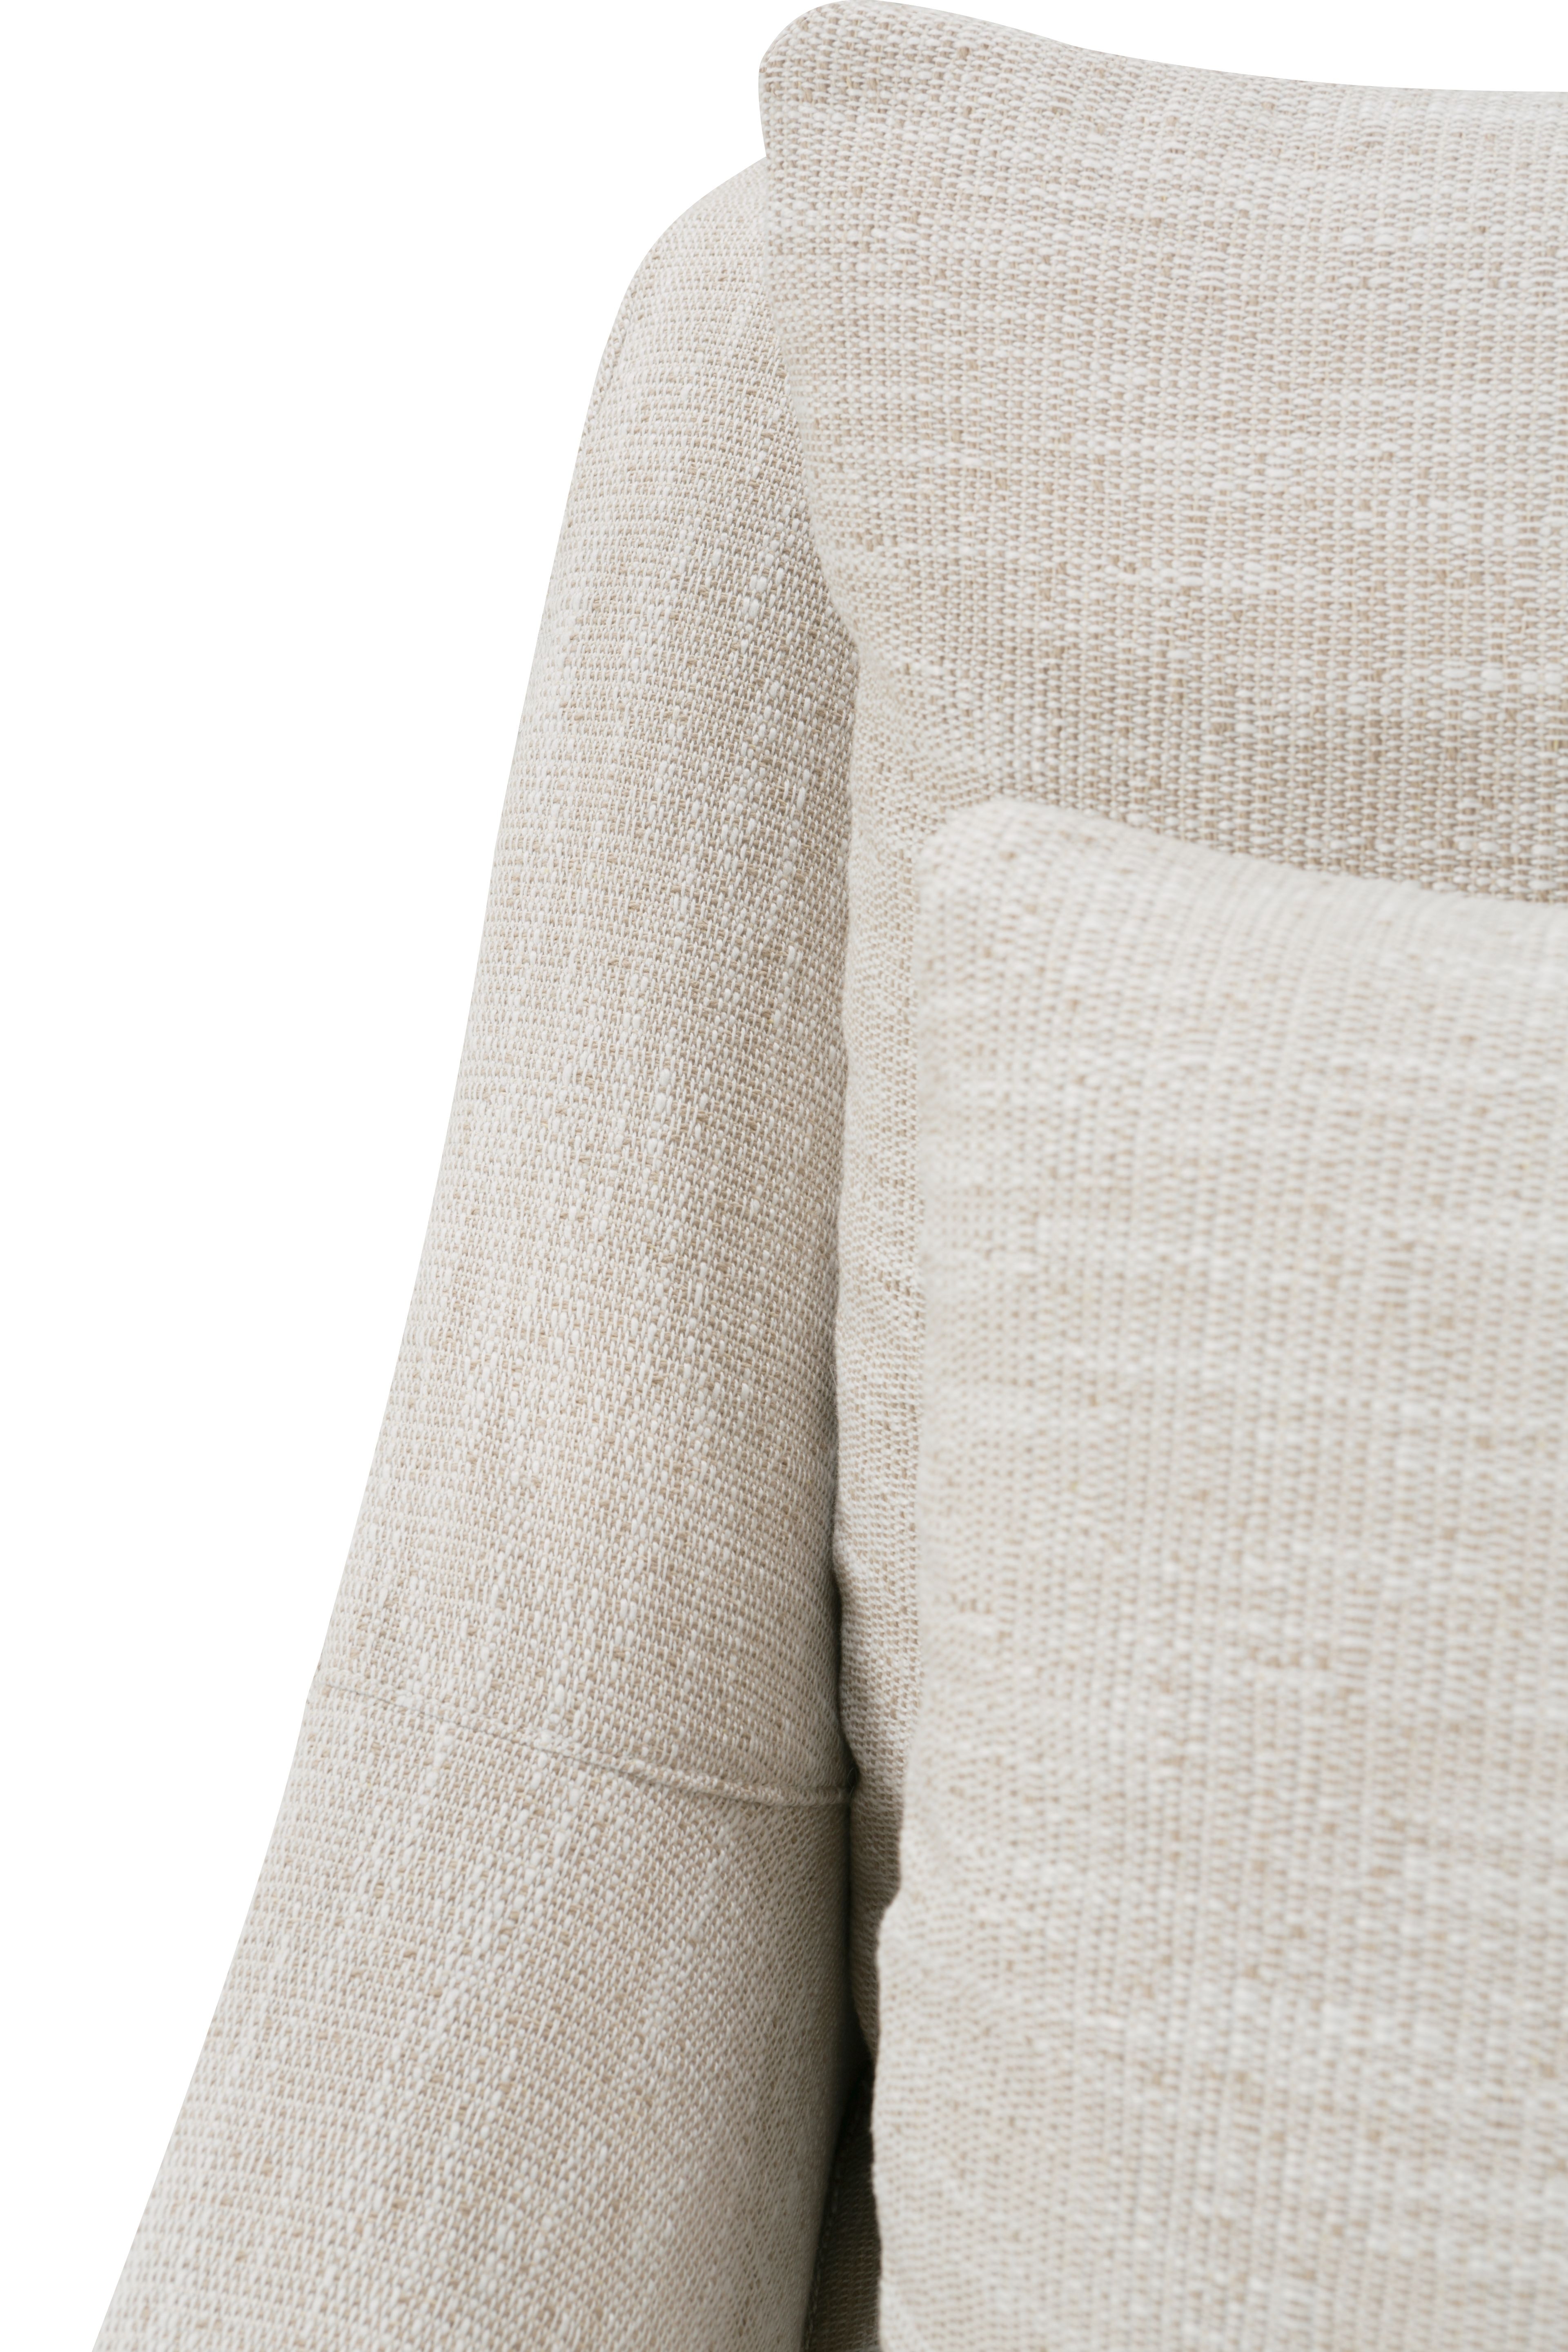 Moreau Slipcover Sofa, Bench Cushion, White, 95" - Image 10